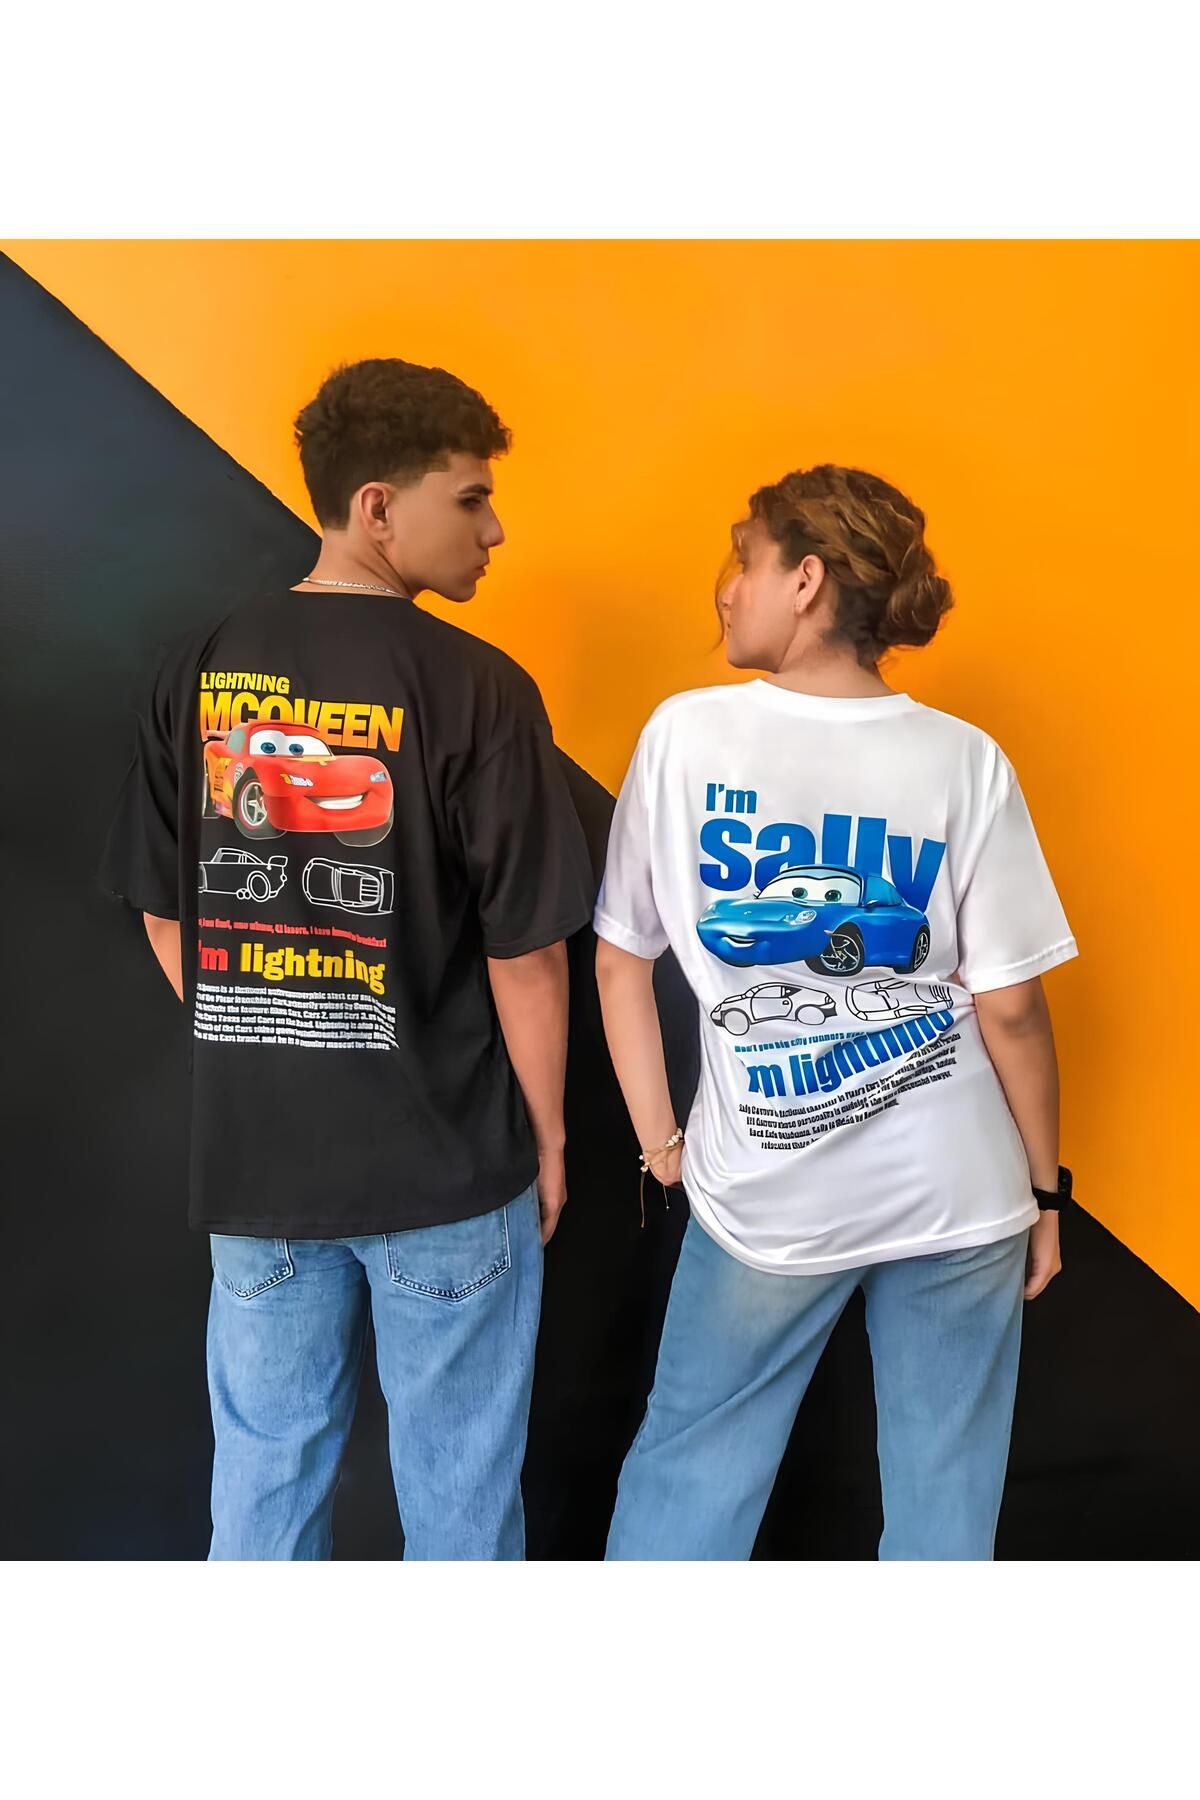 AEMİ Kadın Erkek Unisex Şimşek Mcqueen- Sally Cars Sevgili Çift Kombini Oversize Tshirt 2'li Takım